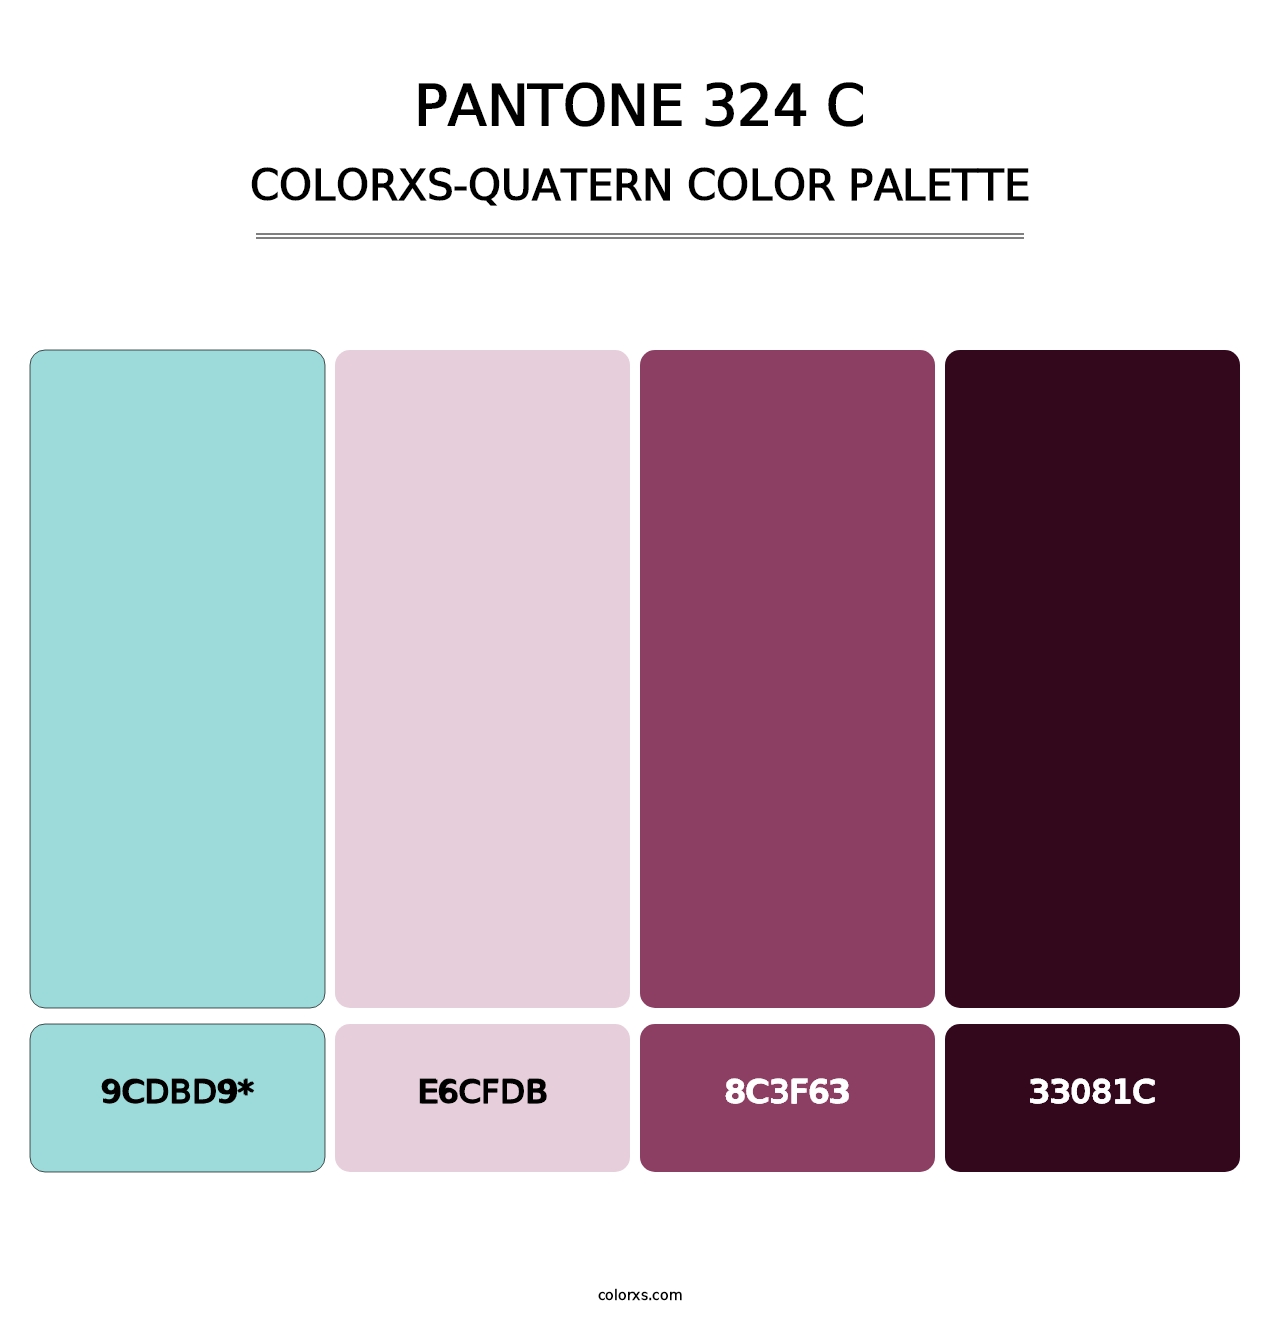 PANTONE 324 C - Colorxs Quatern Palette